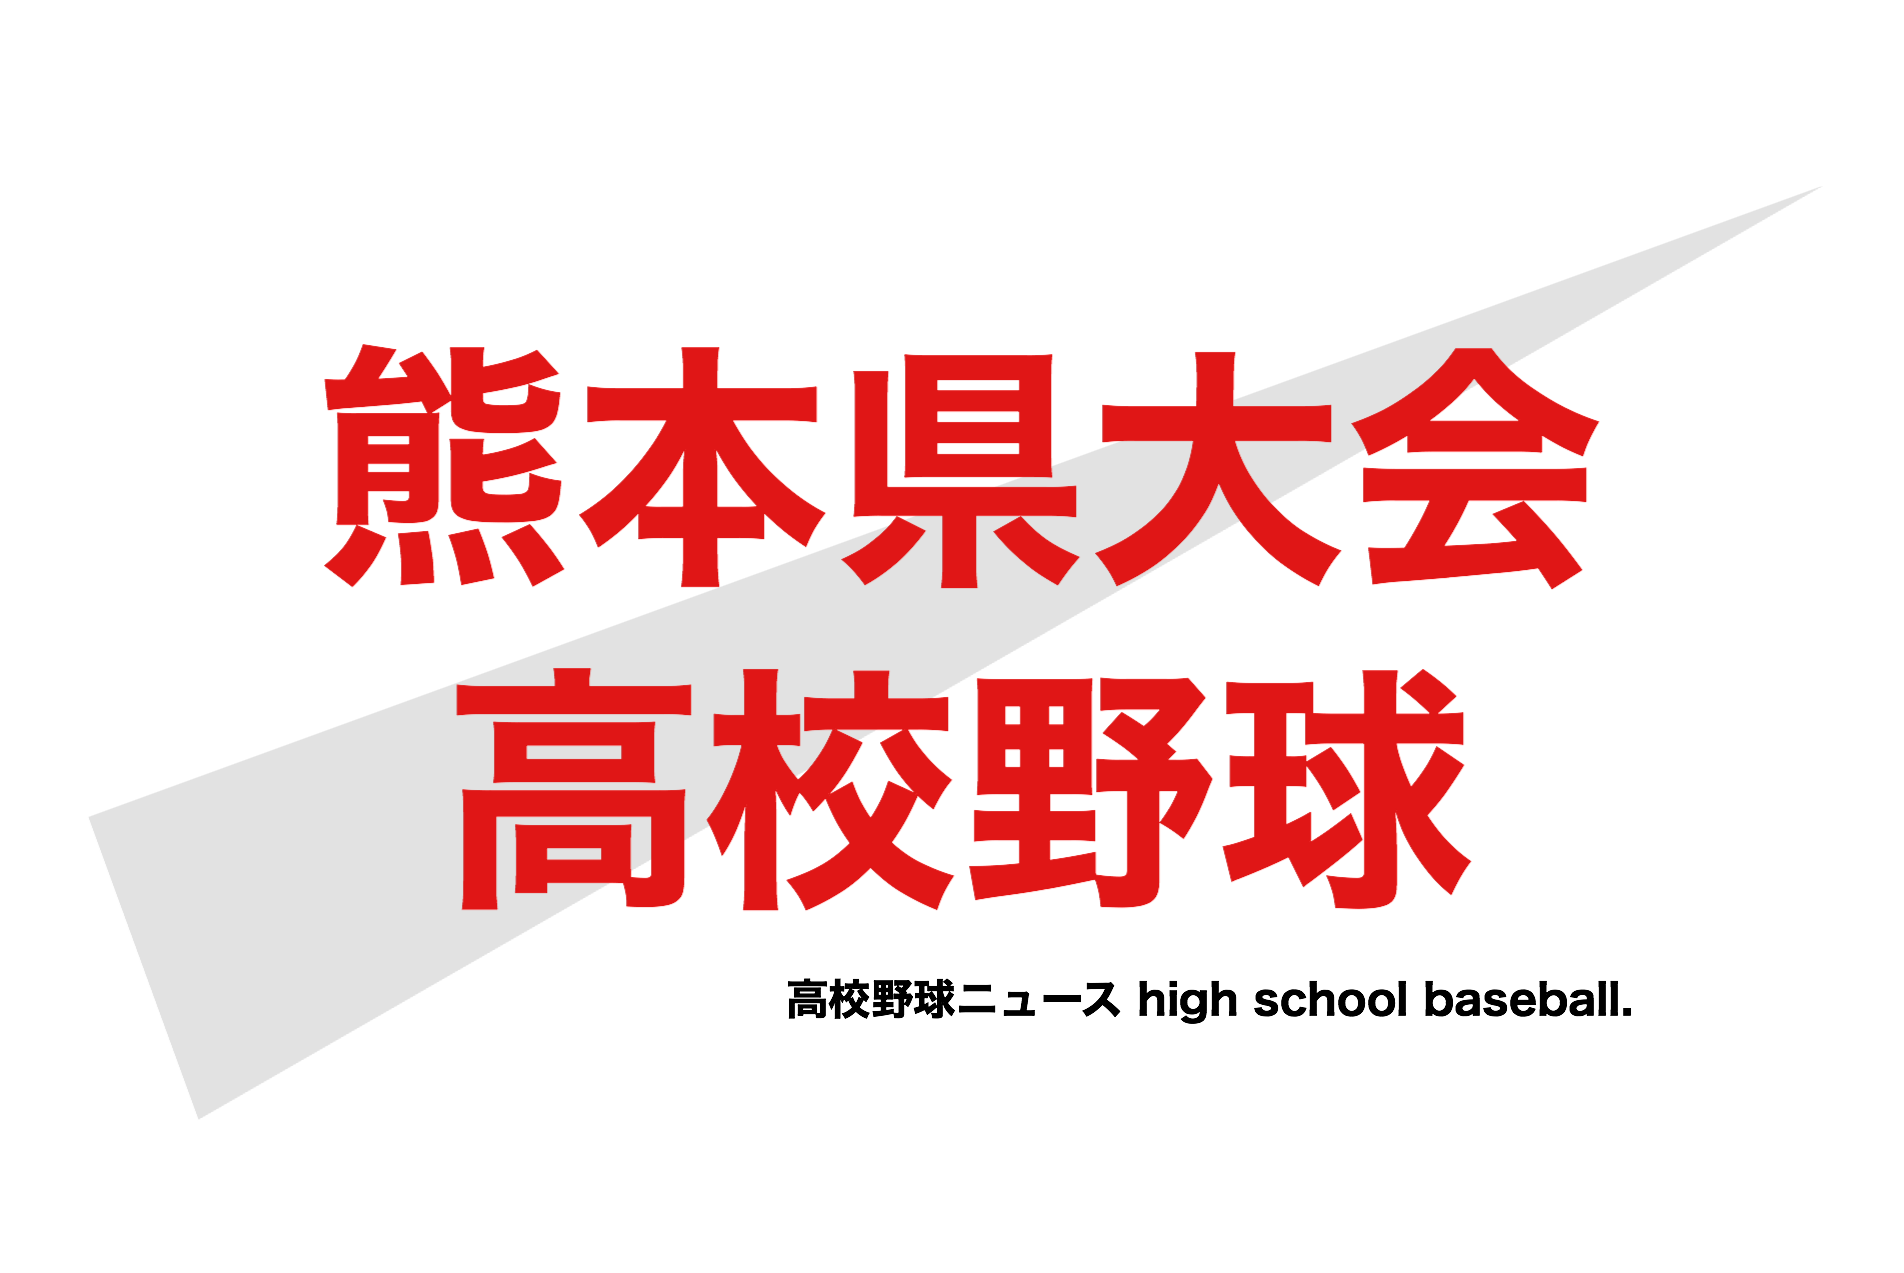 総体 2020 高校 熊本